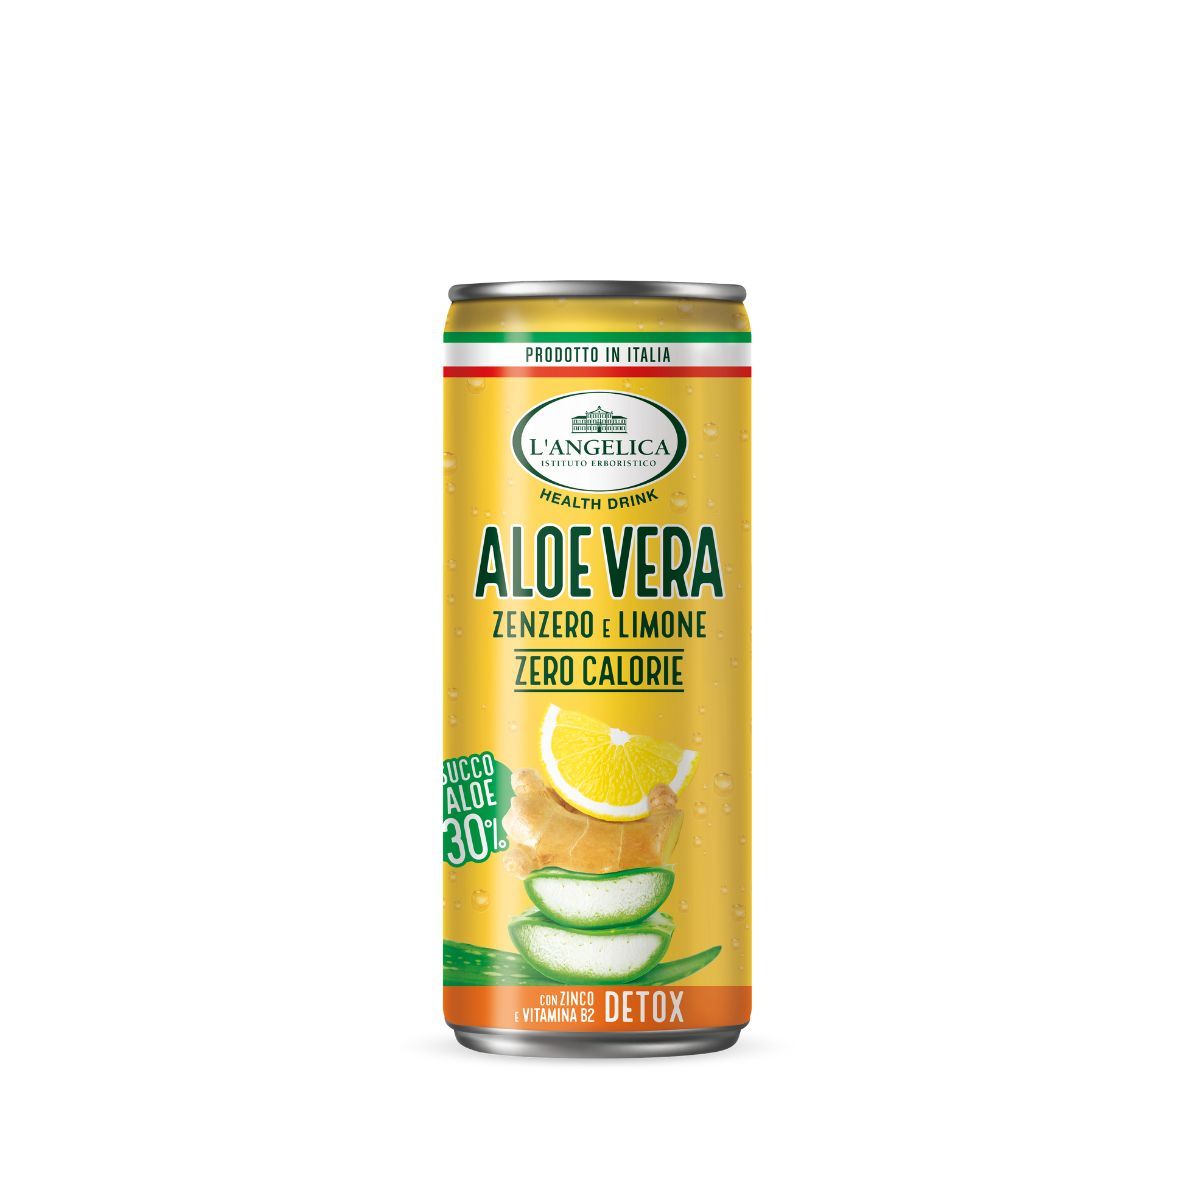 Drink Aloe Vera 30% in lattina - Zenzero e Limone 